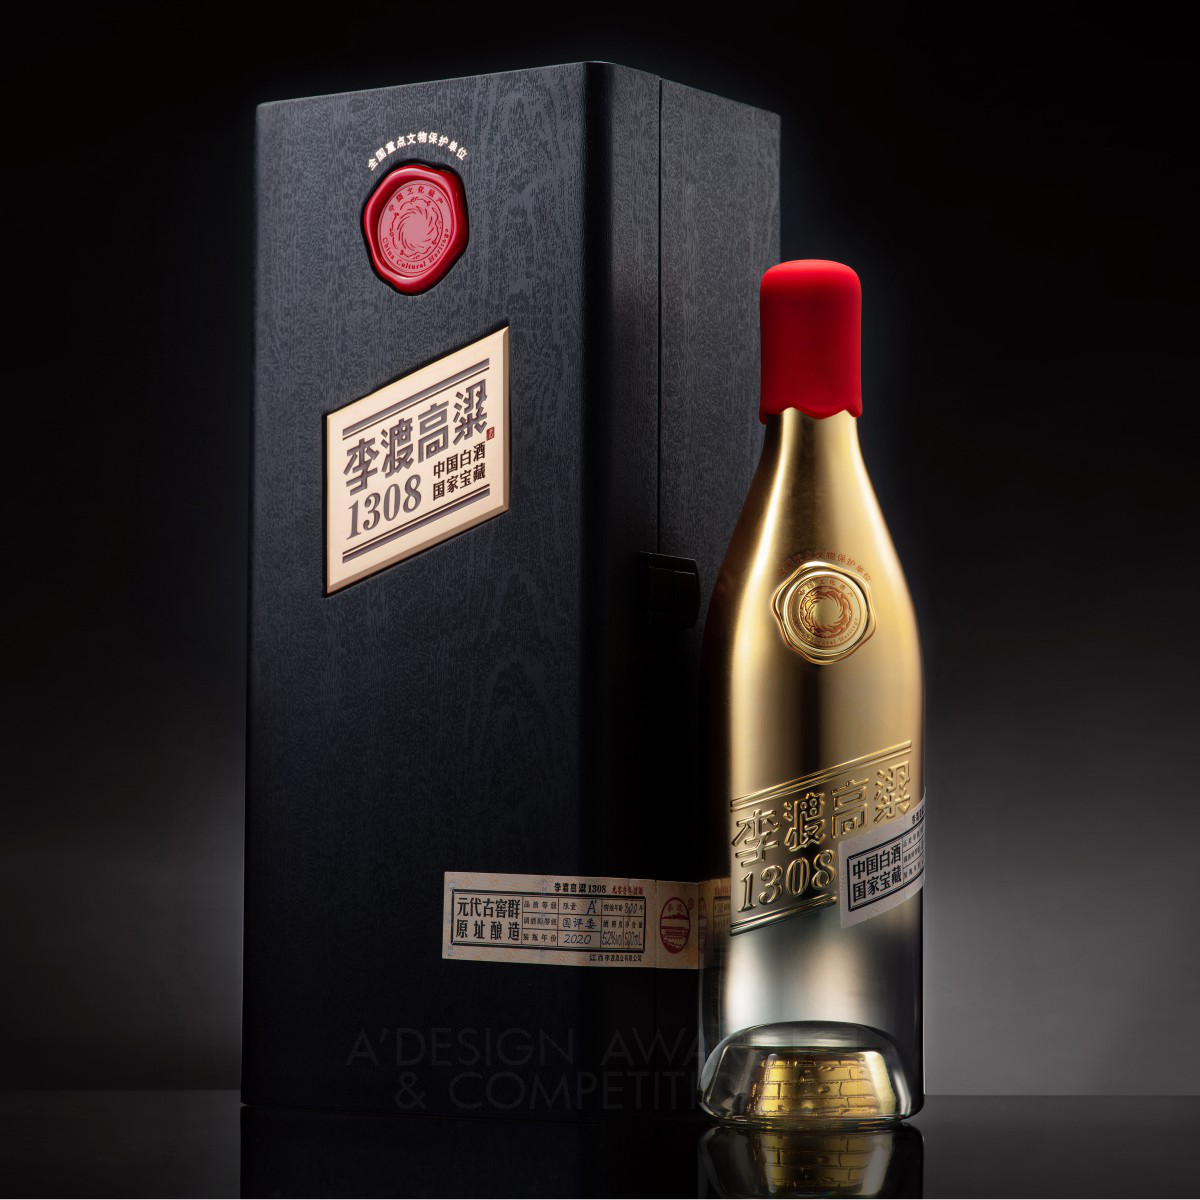 Lidu Sorghum 1308 Alcoholic Beverage Packaging by Wen Liu